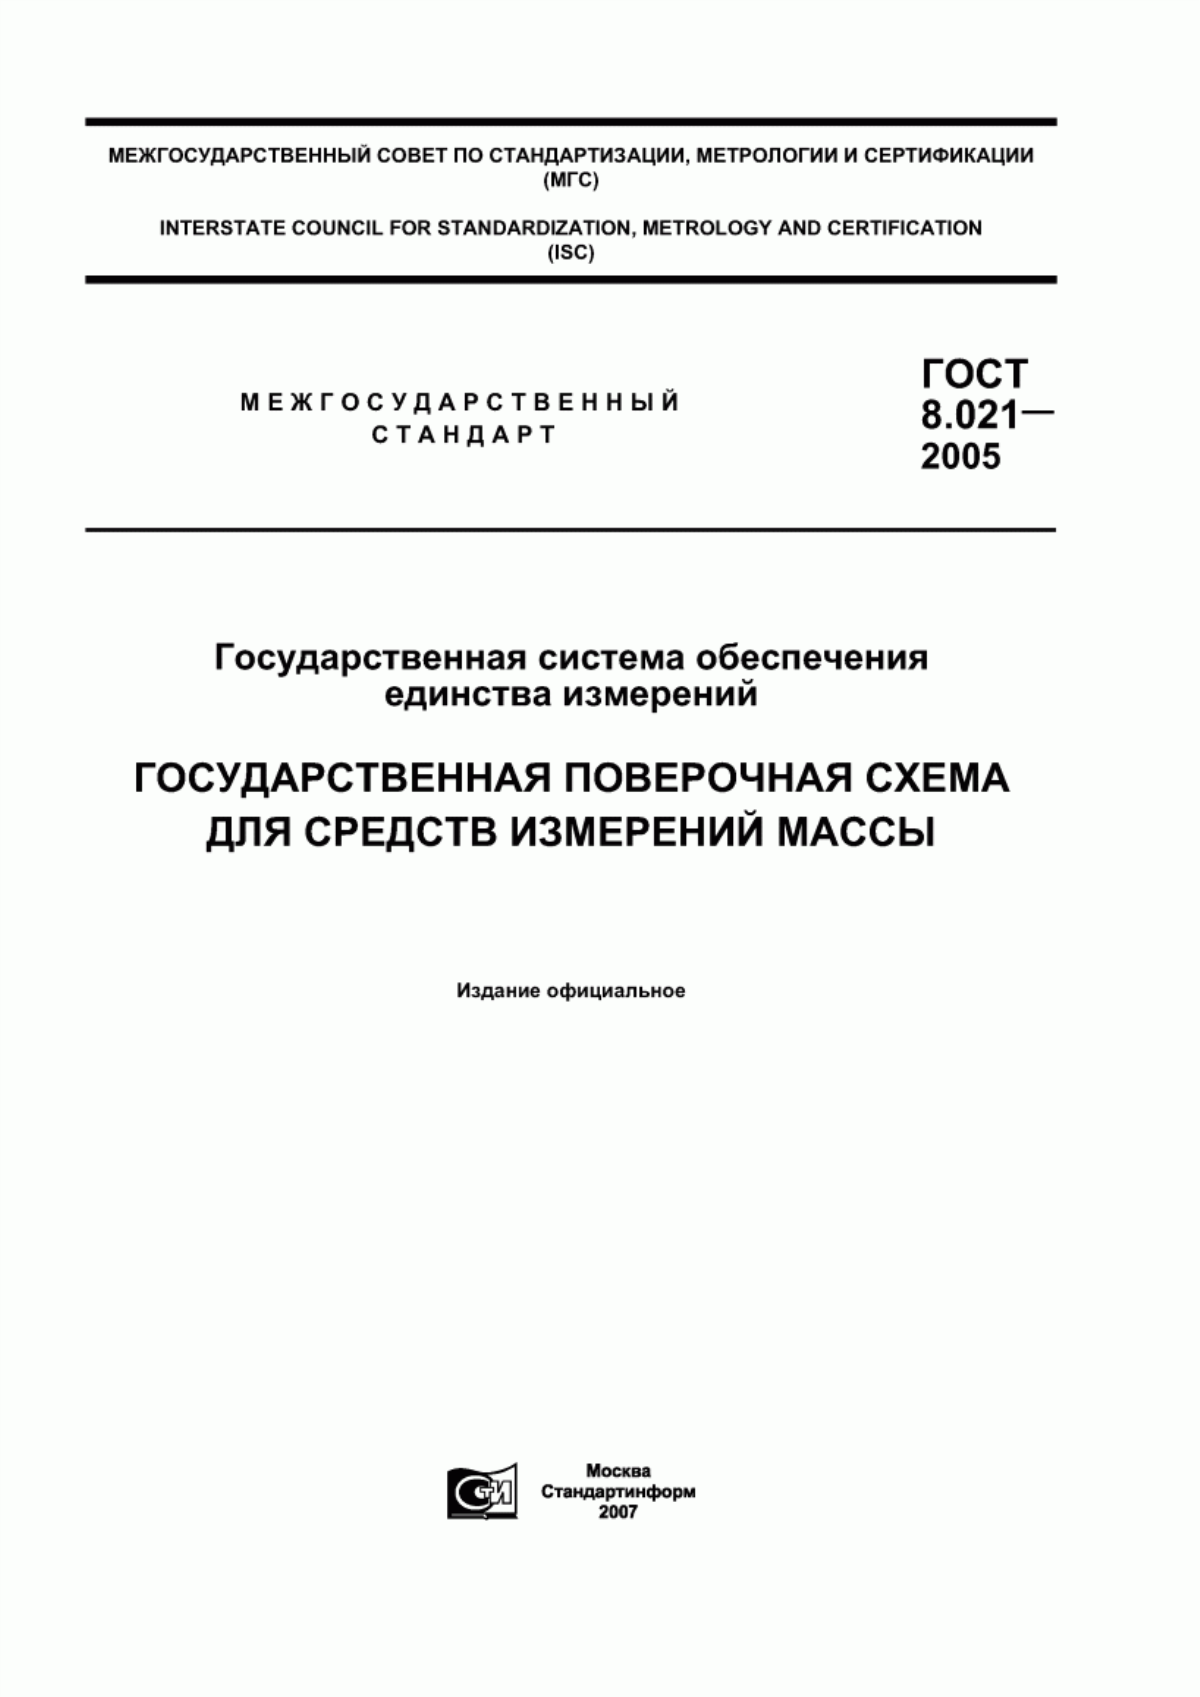 ГОСТ 8.021-2005 Государственная система обеспечения единства измерений. Государственная поверочная схема для средств измерений массы